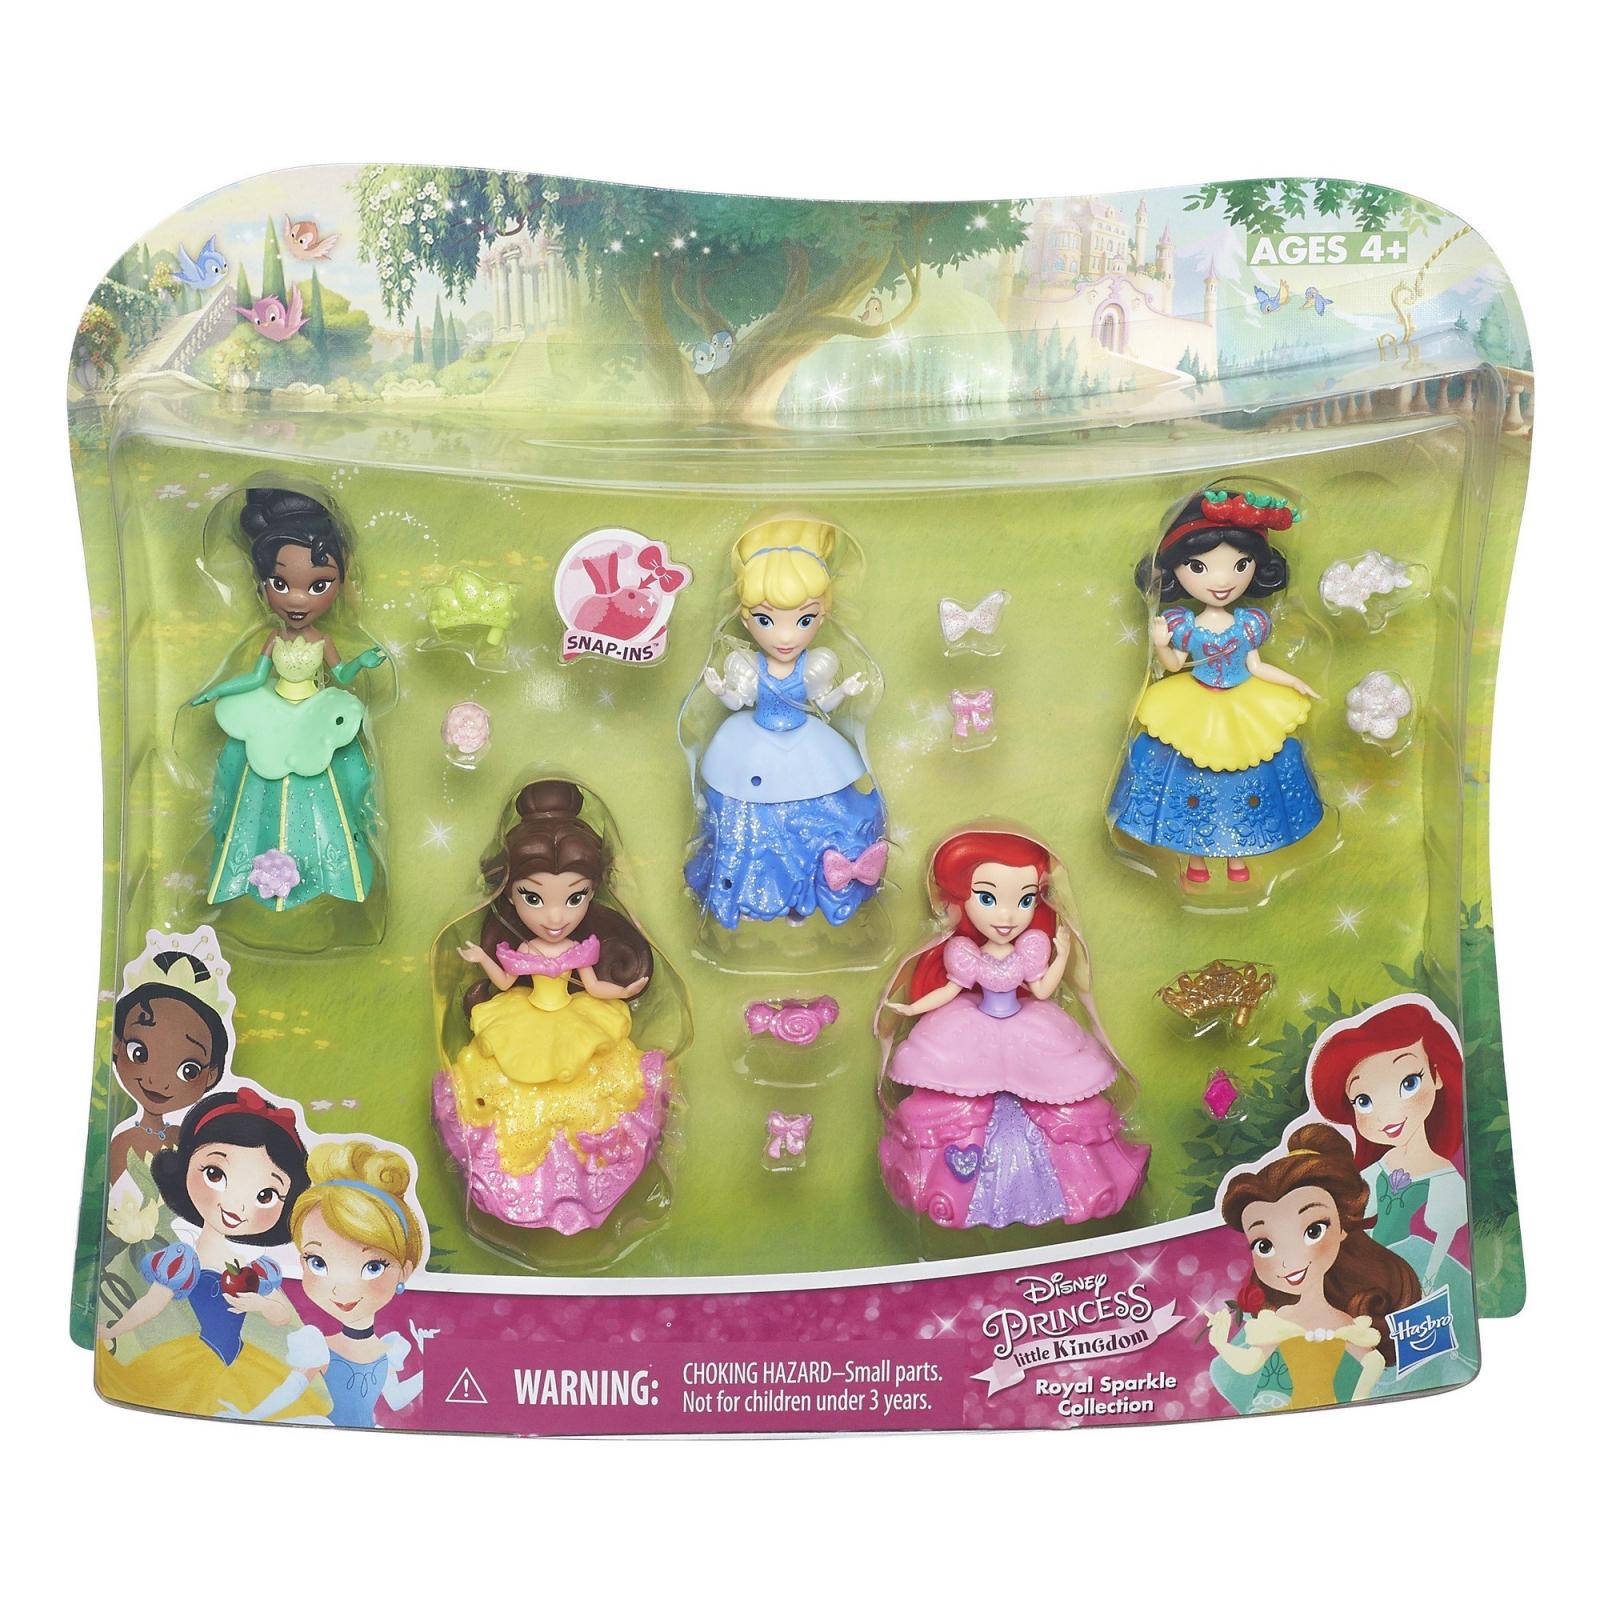 Купить принцесс дисней. Набор little Kingdom Princess Disney. Hasbro Disney мини-куклы принцессы Диснея. Куклы Хасбро принцессы Дисней. Disney Princess Hasbro little Kingdom.